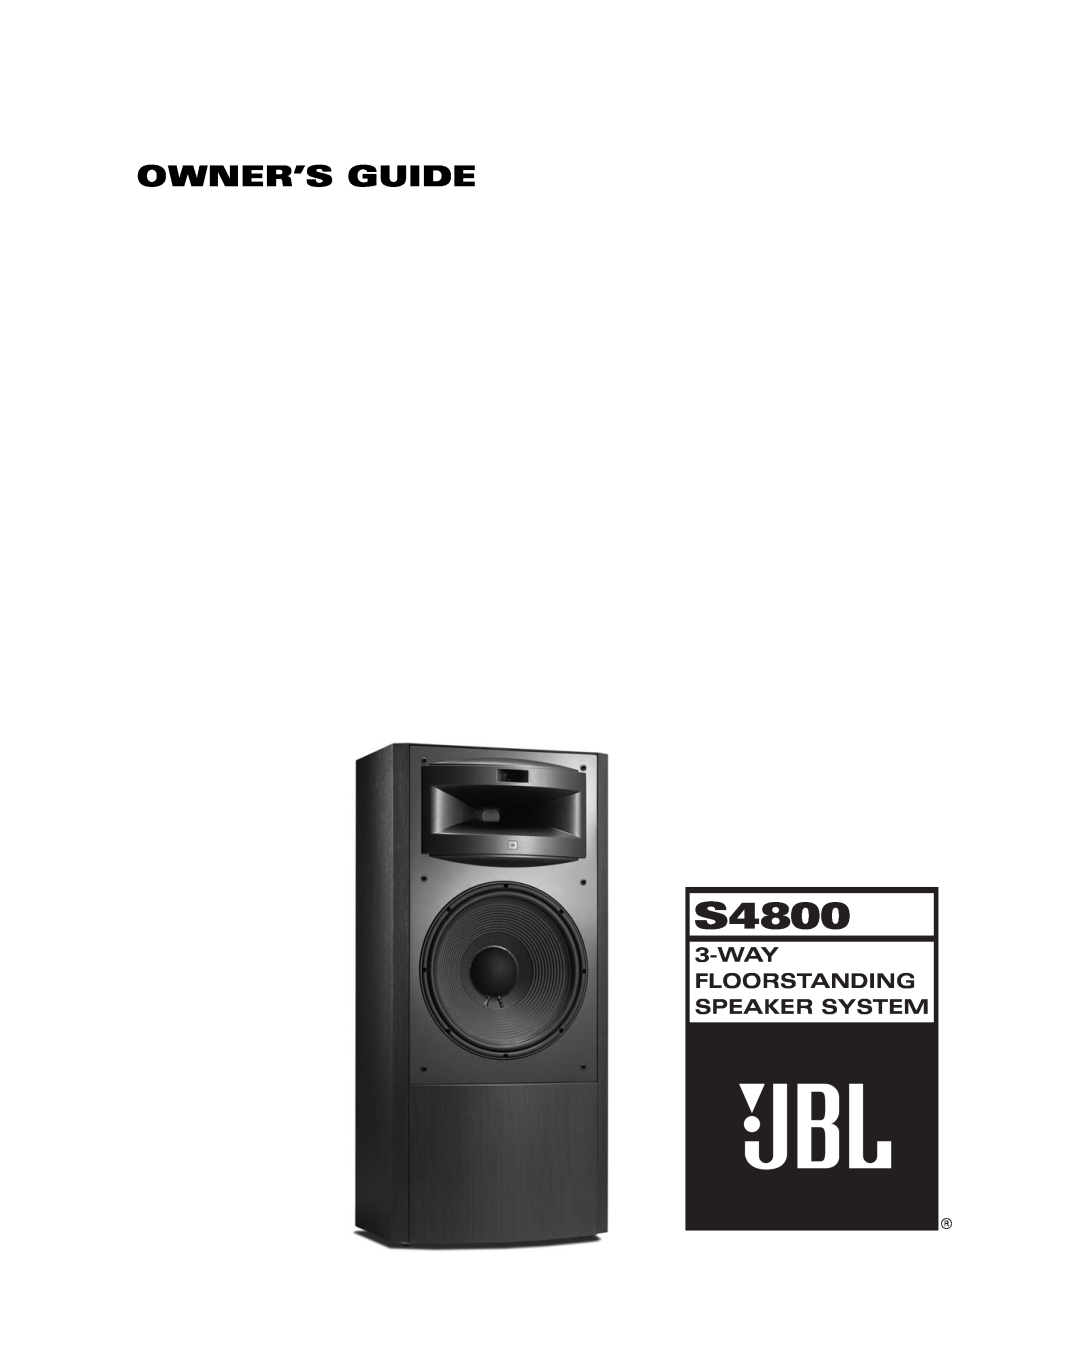 JBL S4800 manual Owner’S Guide, Wayfloorstanding Speaker System 